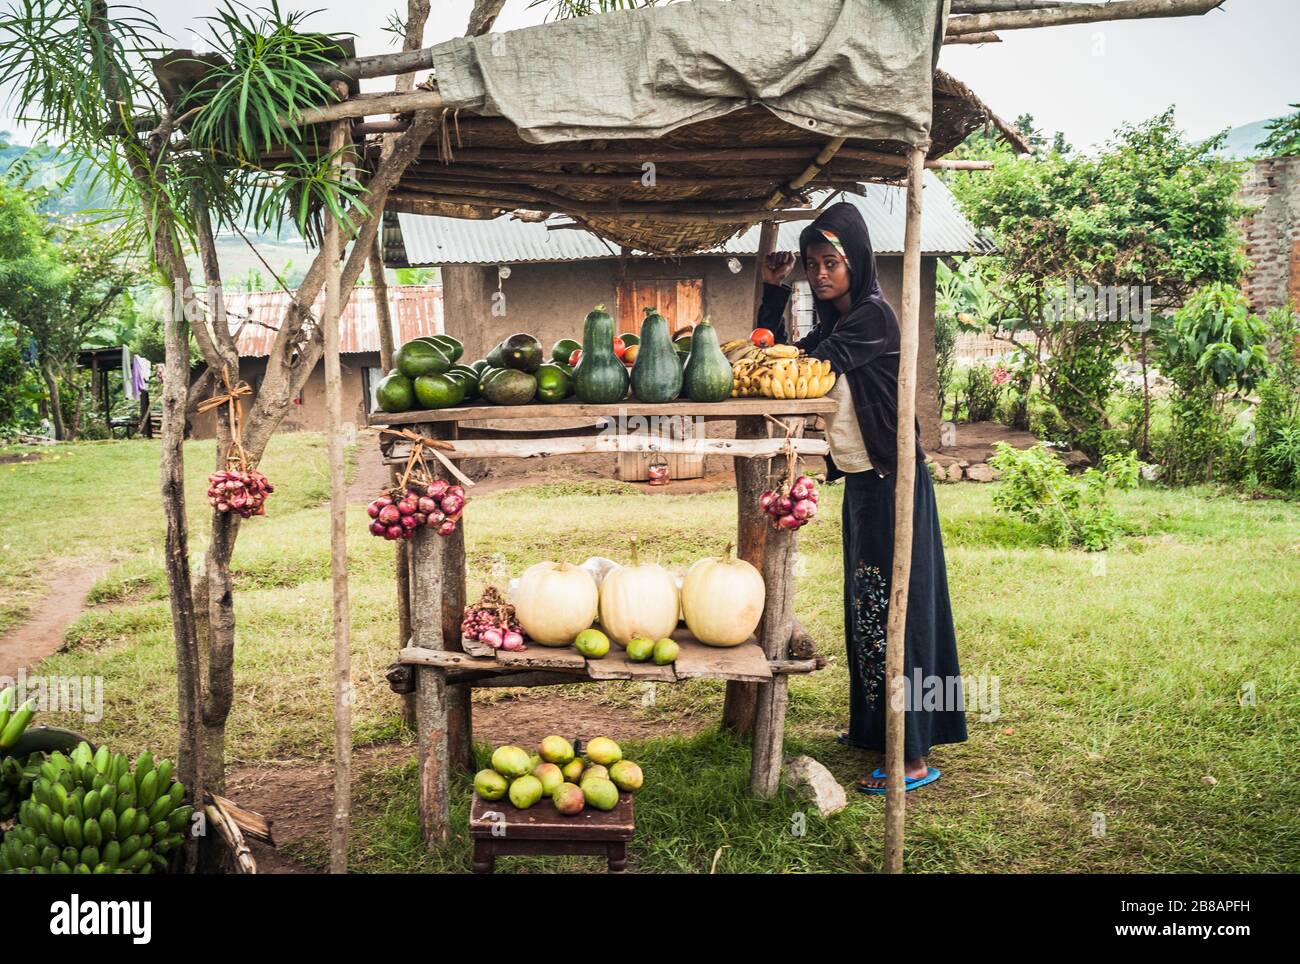 Kasese, Uganda - 22. Juli 2011: Junge schwarze Frau vor Ort, die Obst auf einem Markt Stall oder Stand verkauft. Stockfoto